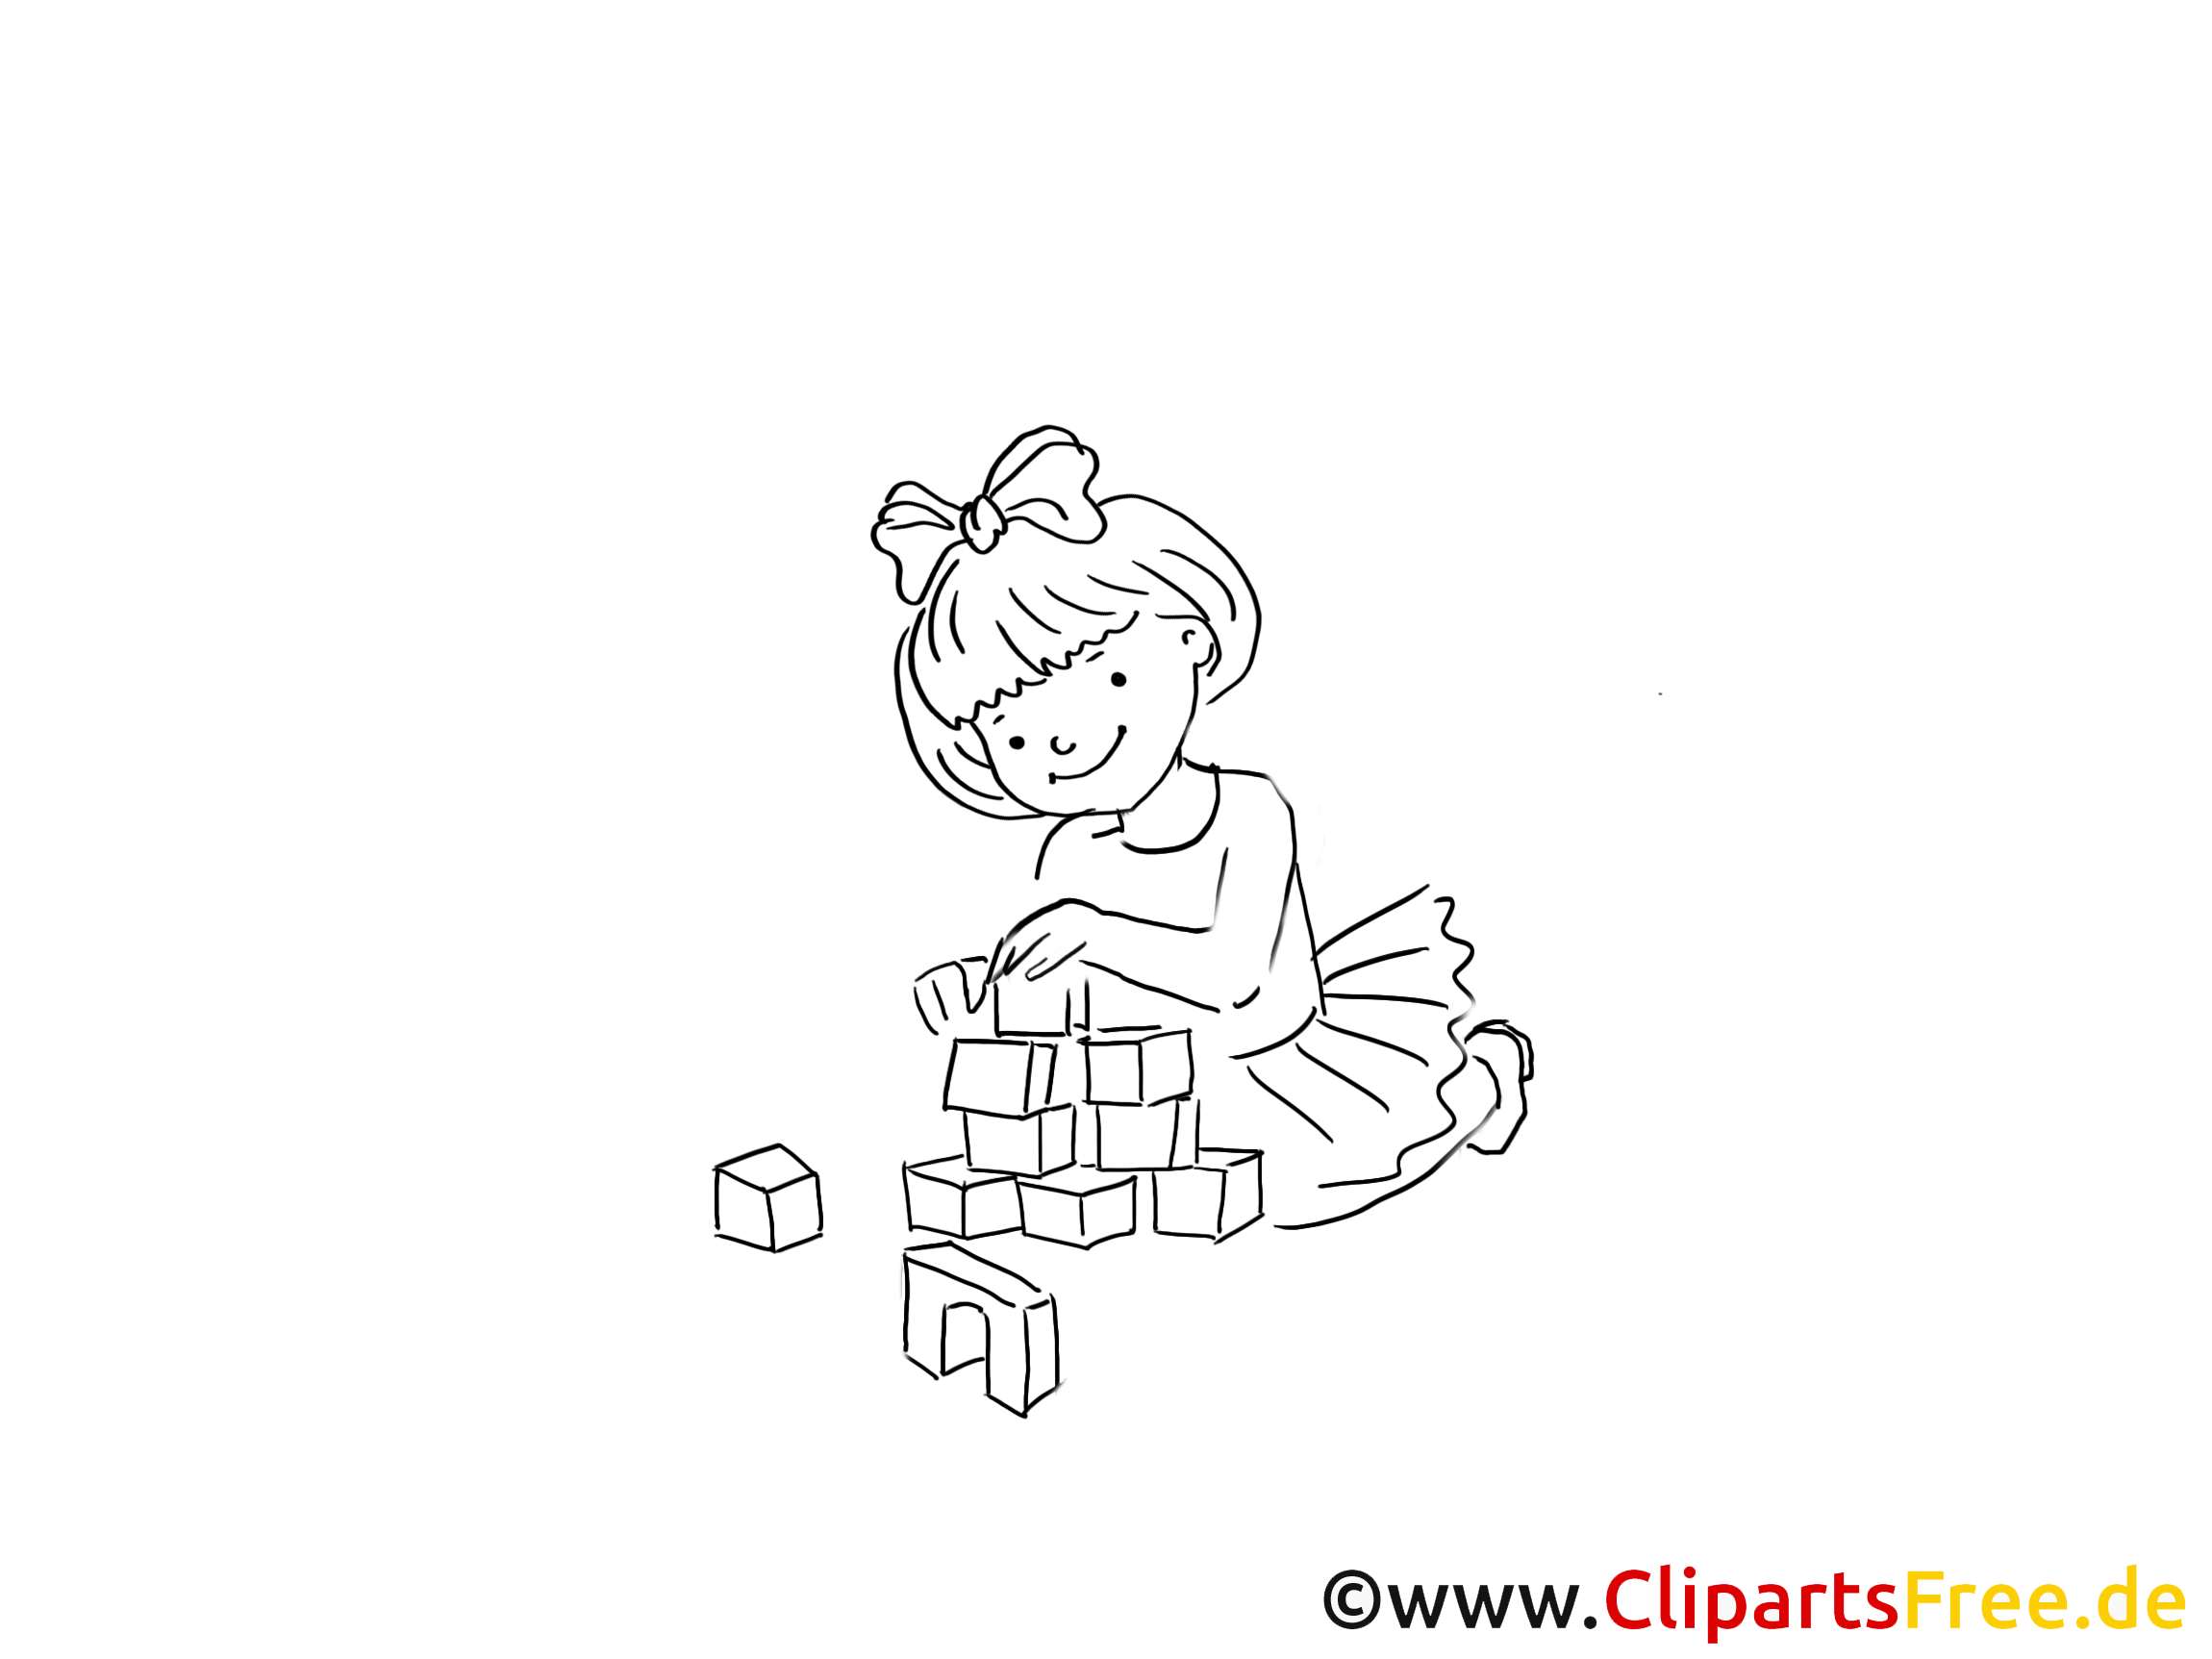 Jouer aux cubes dessins gratuits - Maternelle clipart